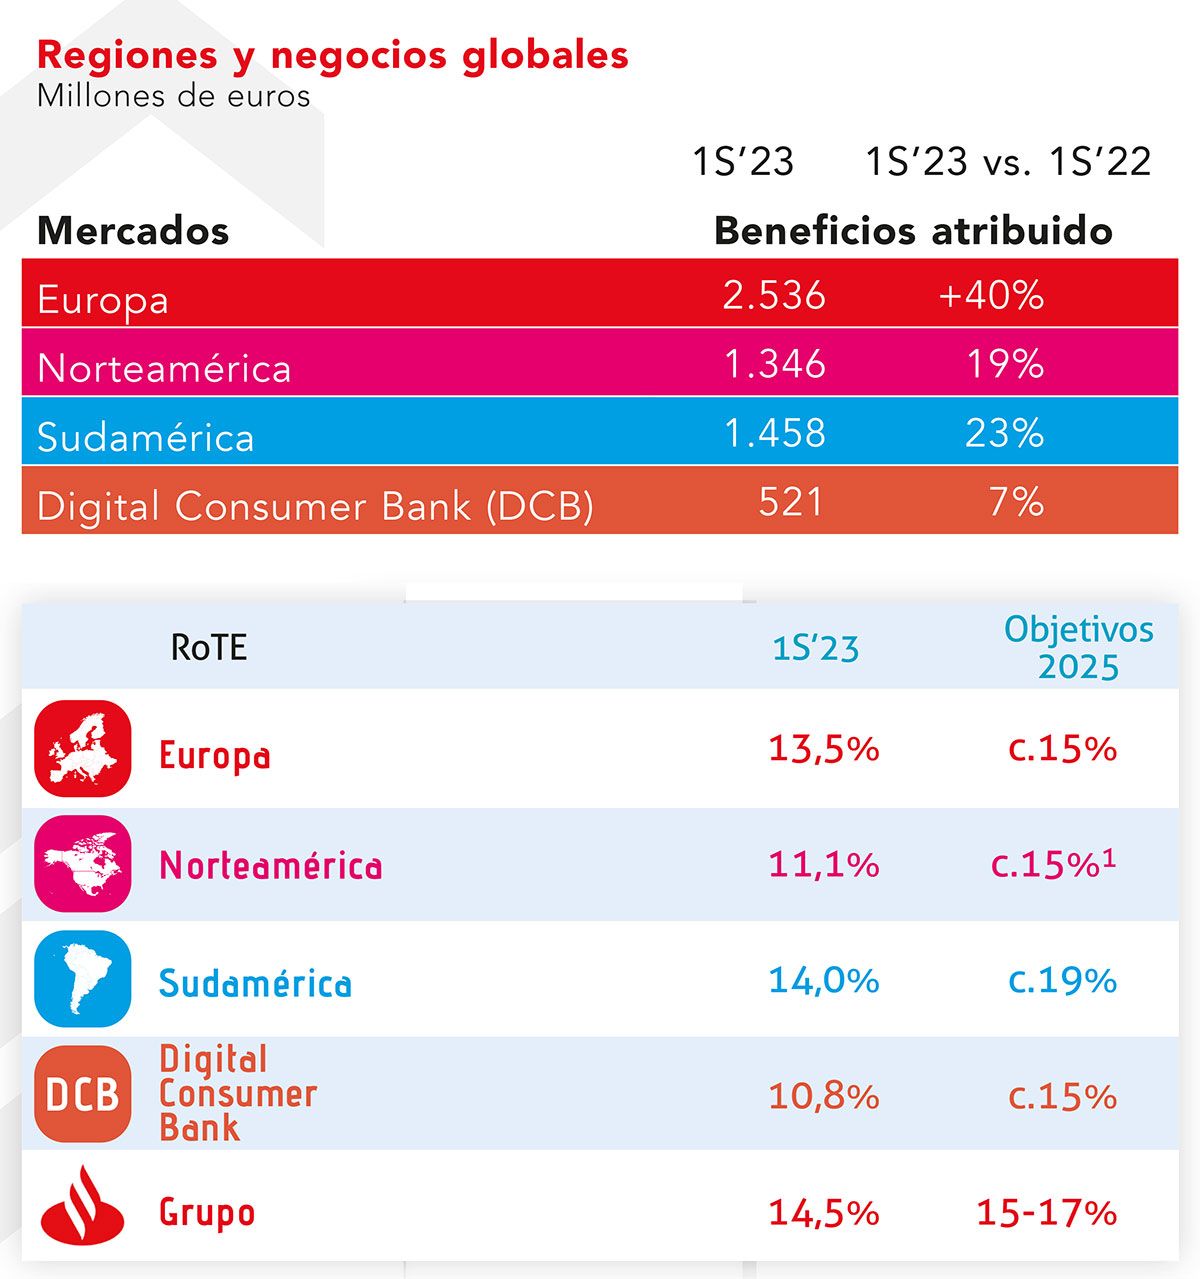 resultados y objetivos de Santander por regiones y negocios